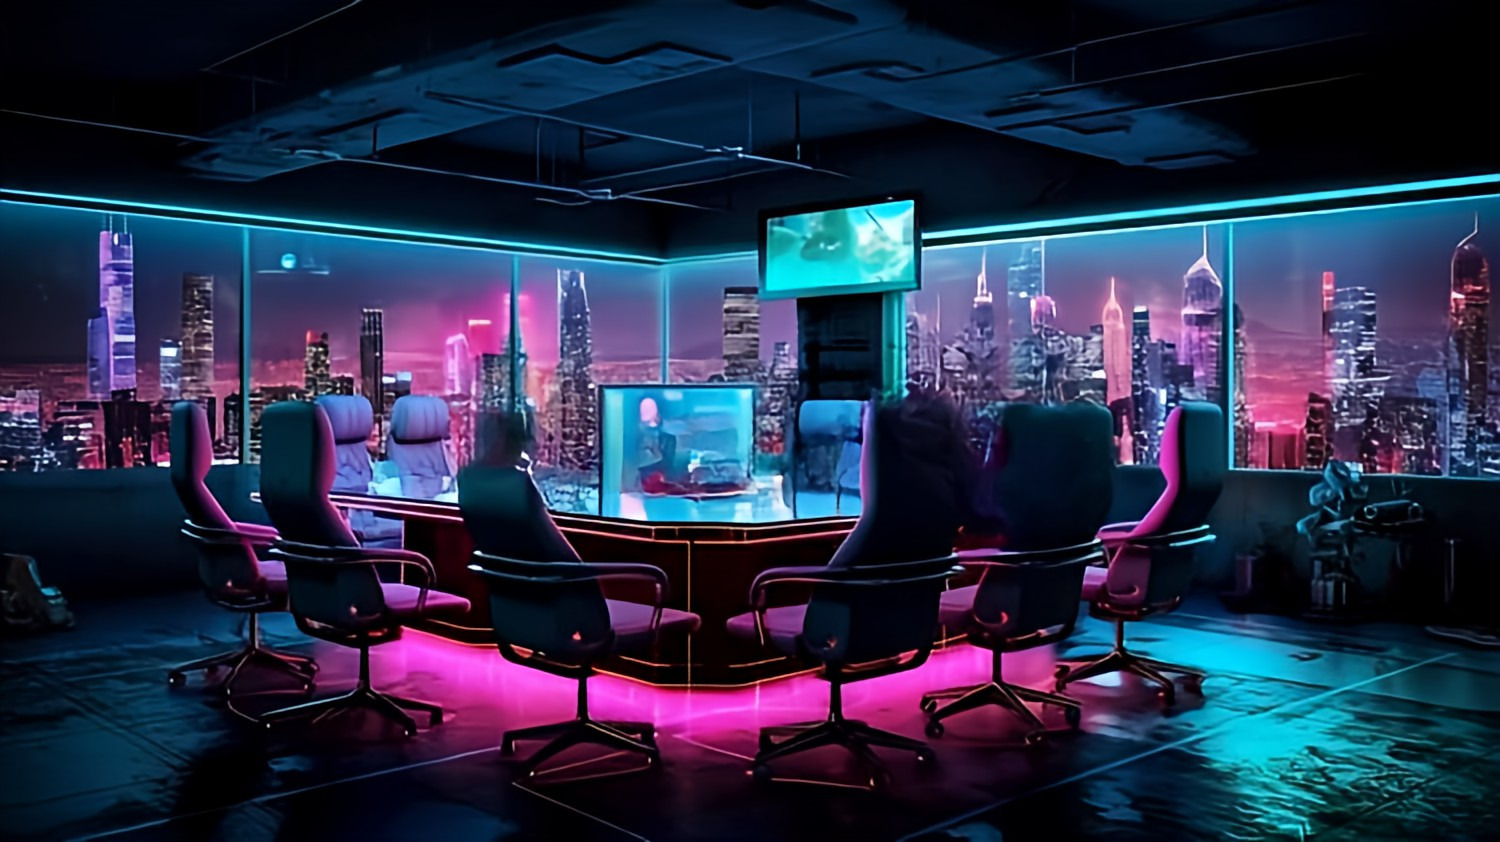 Meeting - réunion communauté neon cyberpunk style